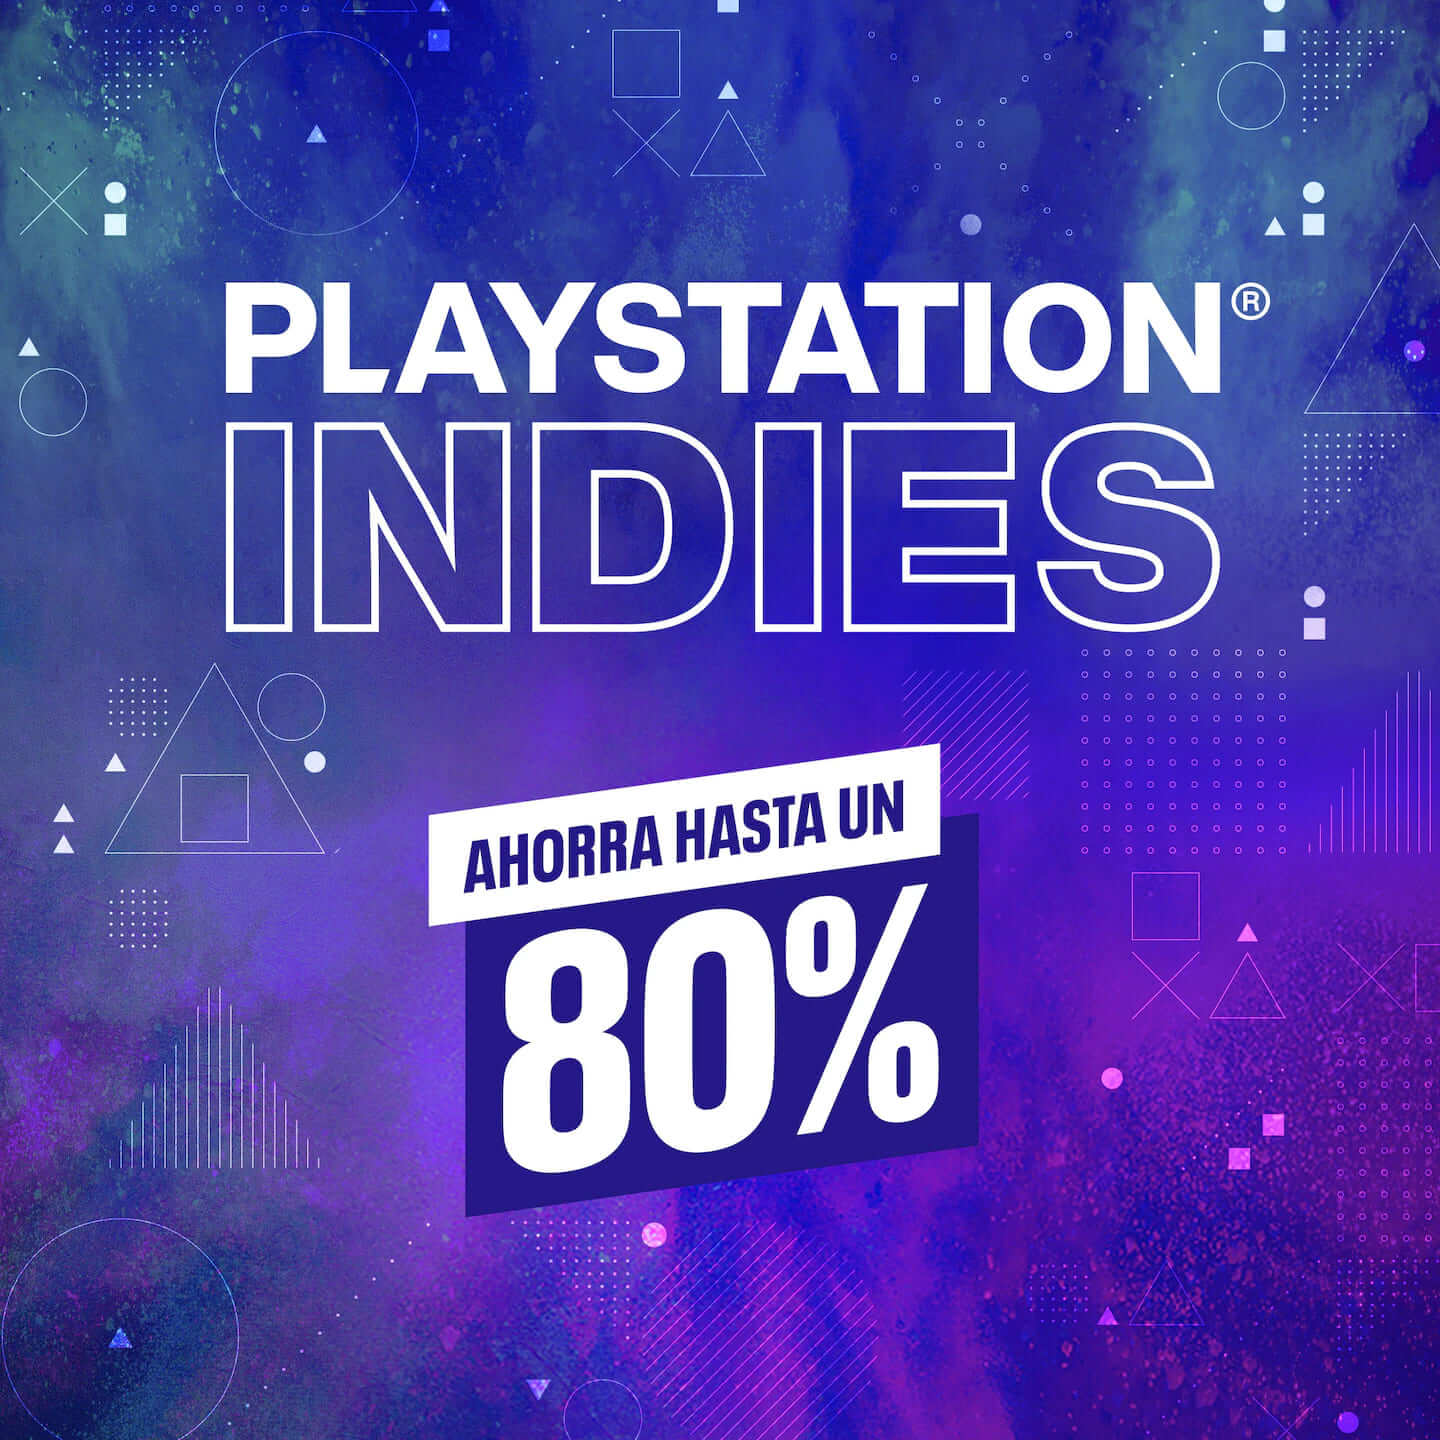 PlayStation Indies regresa a la PlayStation Store con ofertas en más de  1000 títulos - AllGamersIn